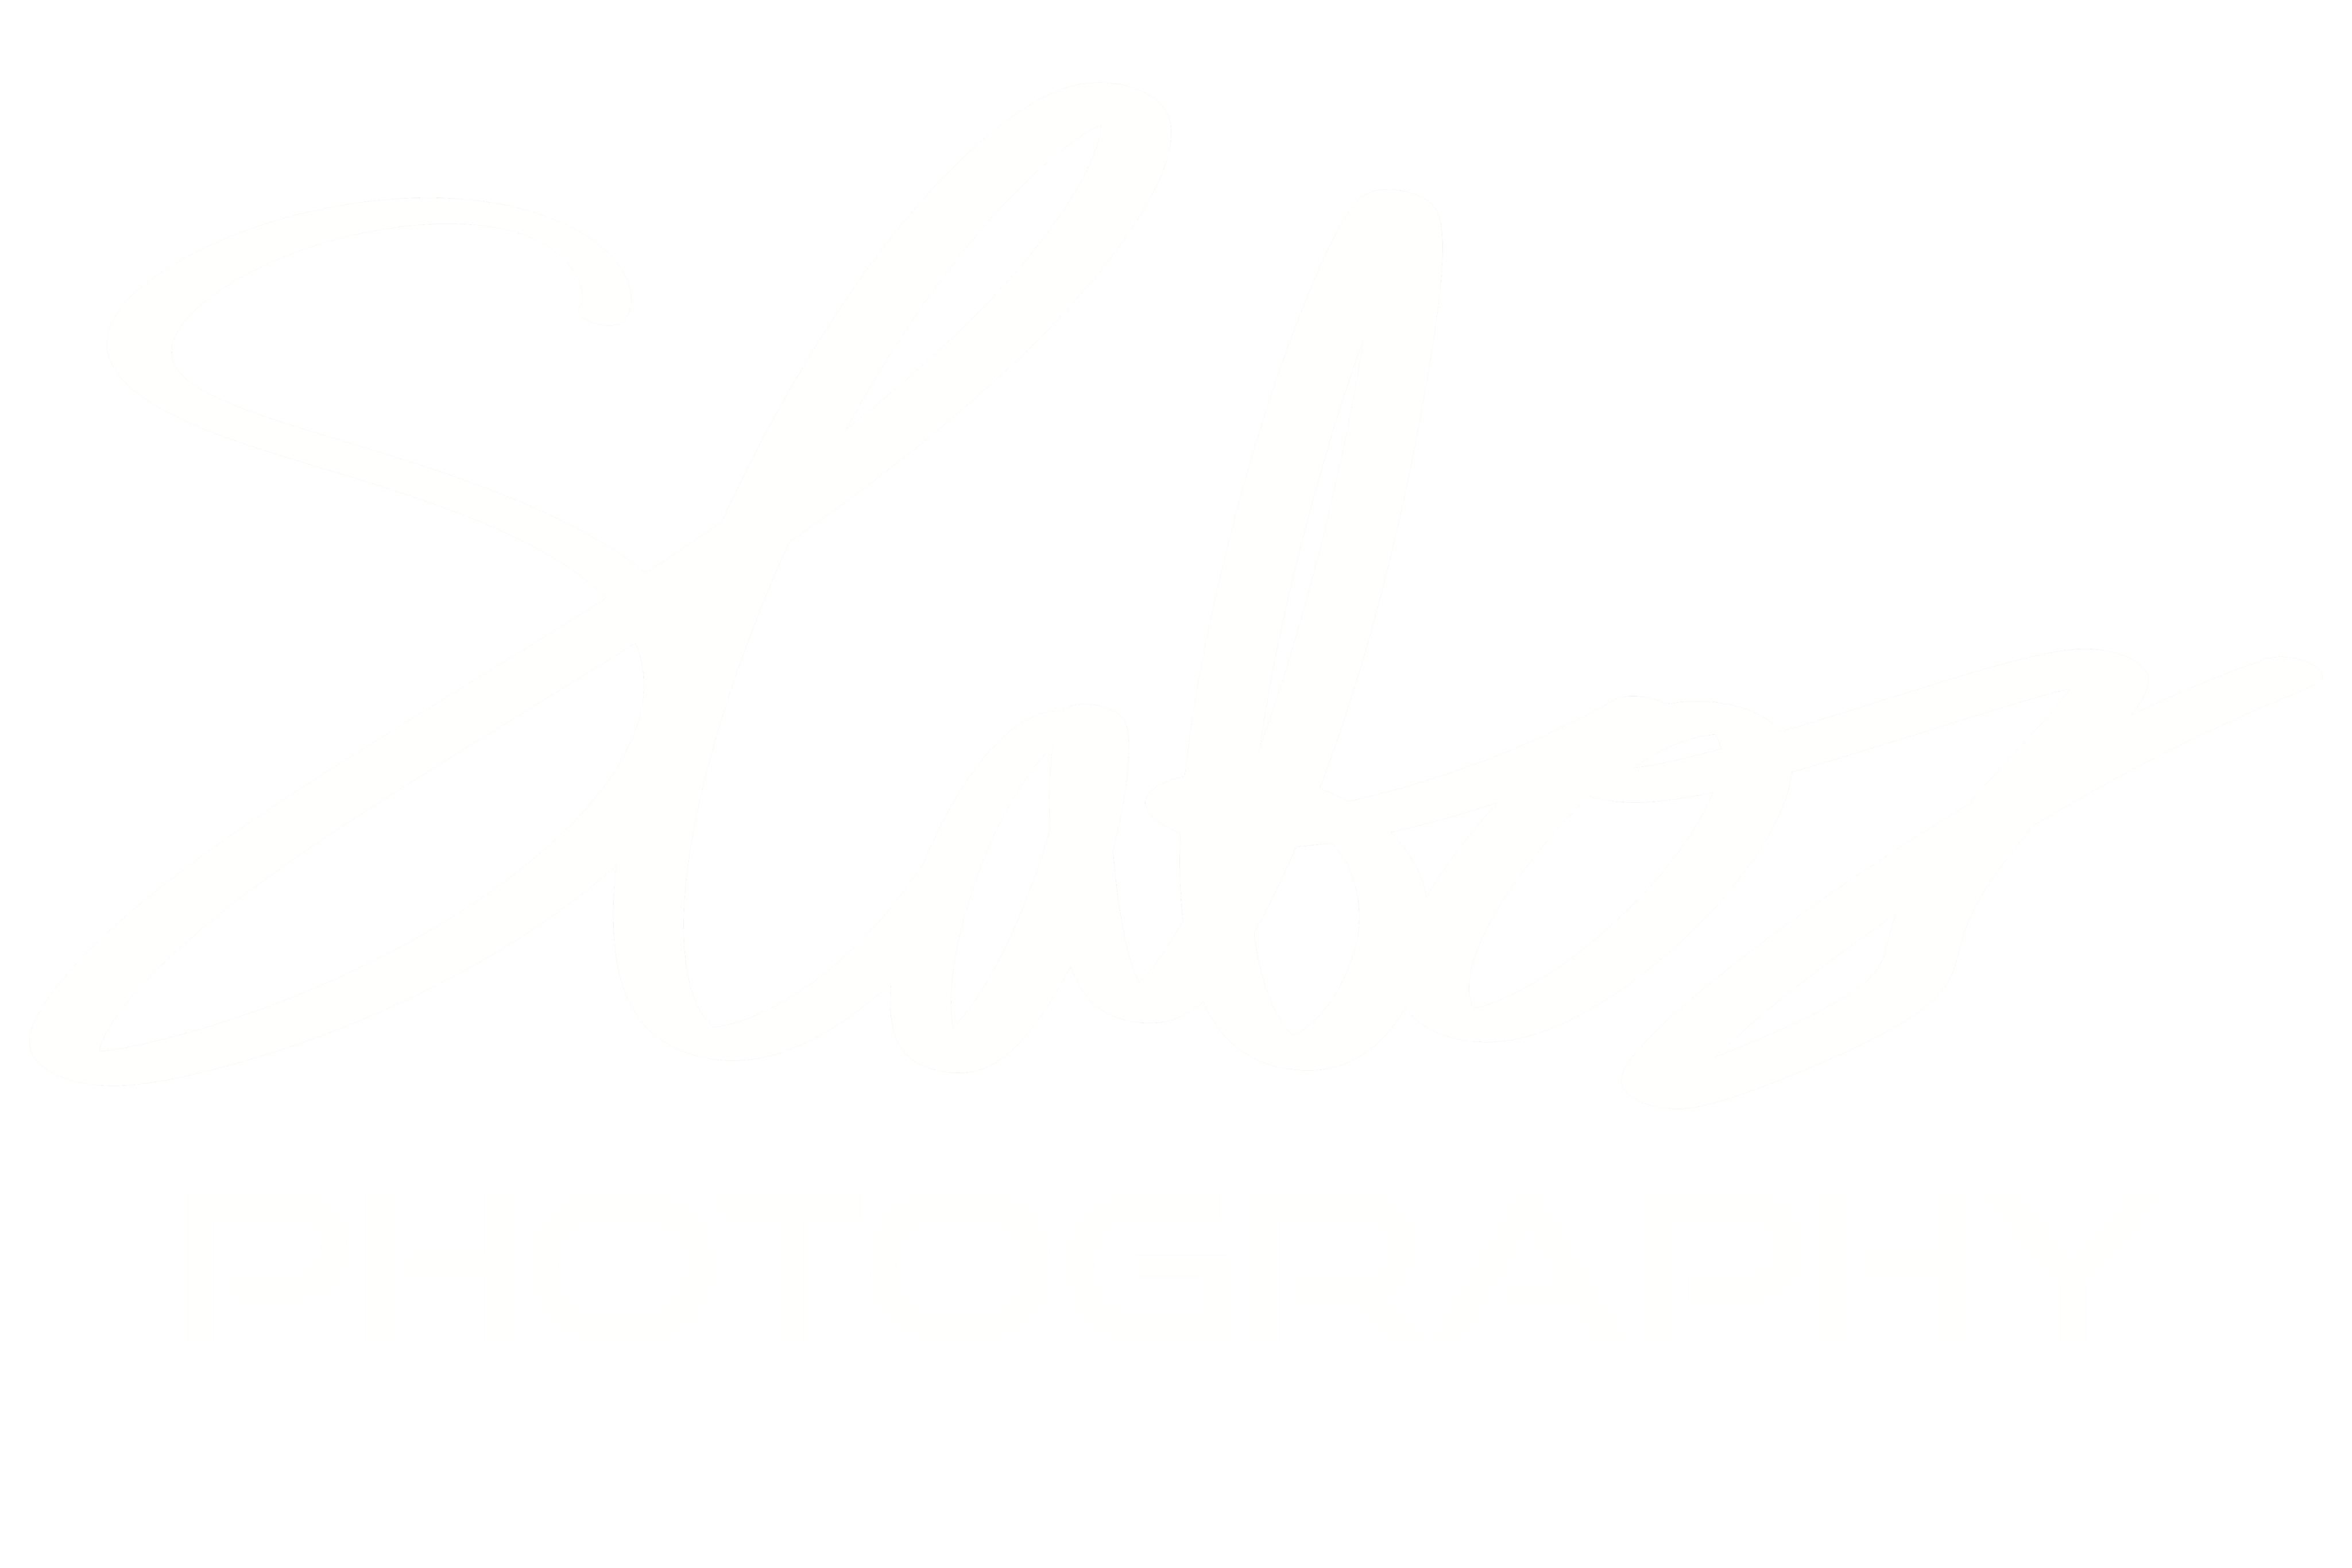 Slabosz Photography